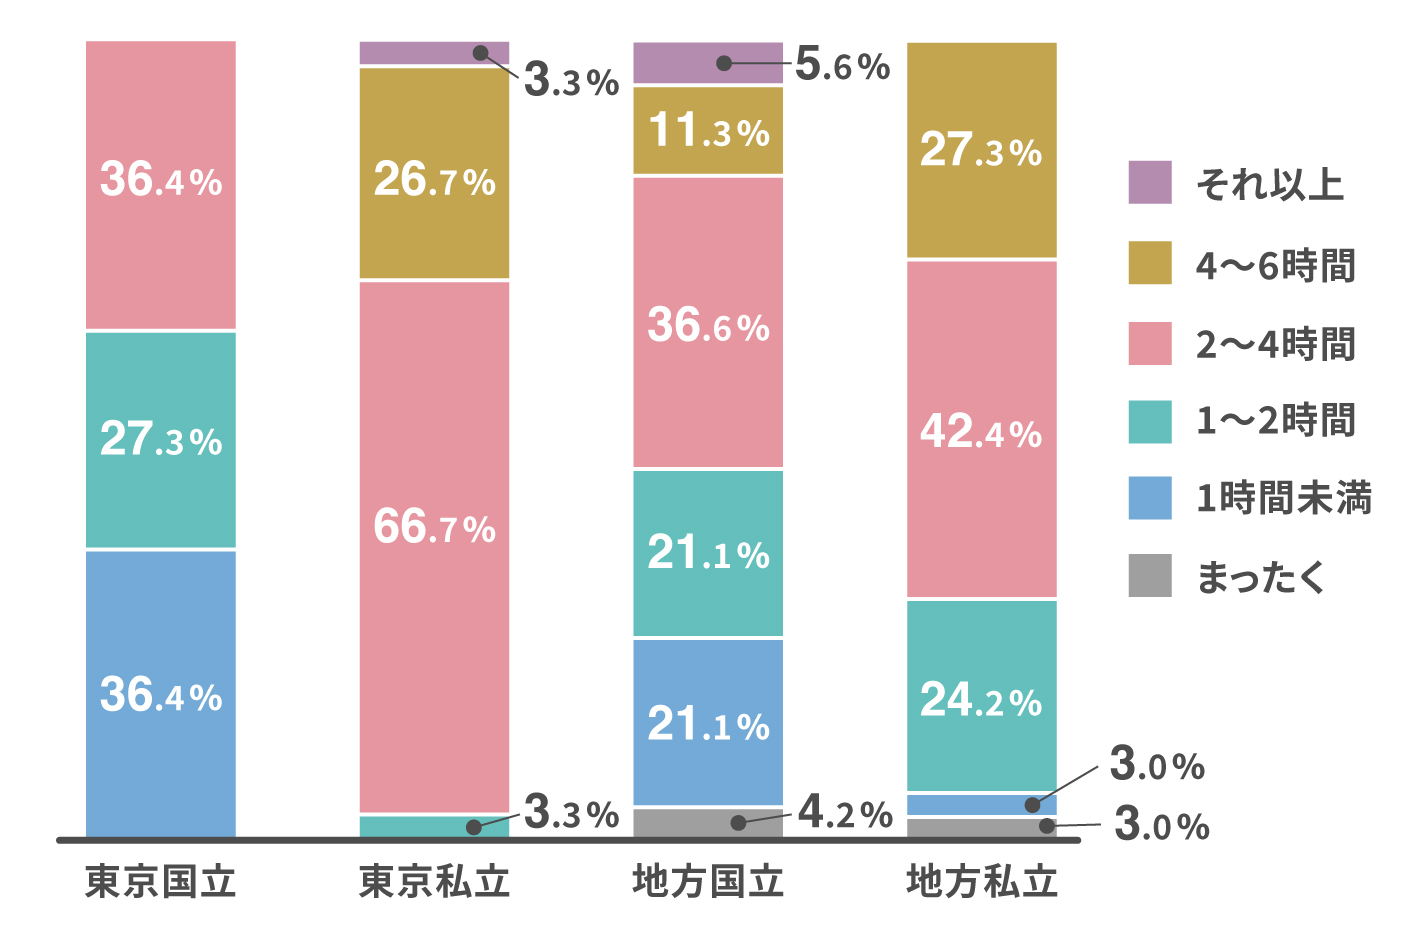 最も平均勉強時間が長いのは東京私立大学、短いのが東京国立大学に。特に6年生になると実習の有無で勉強時間が大きく異なり、国立大の学生は11～12月から国試勉強にスパートをかけるよう。